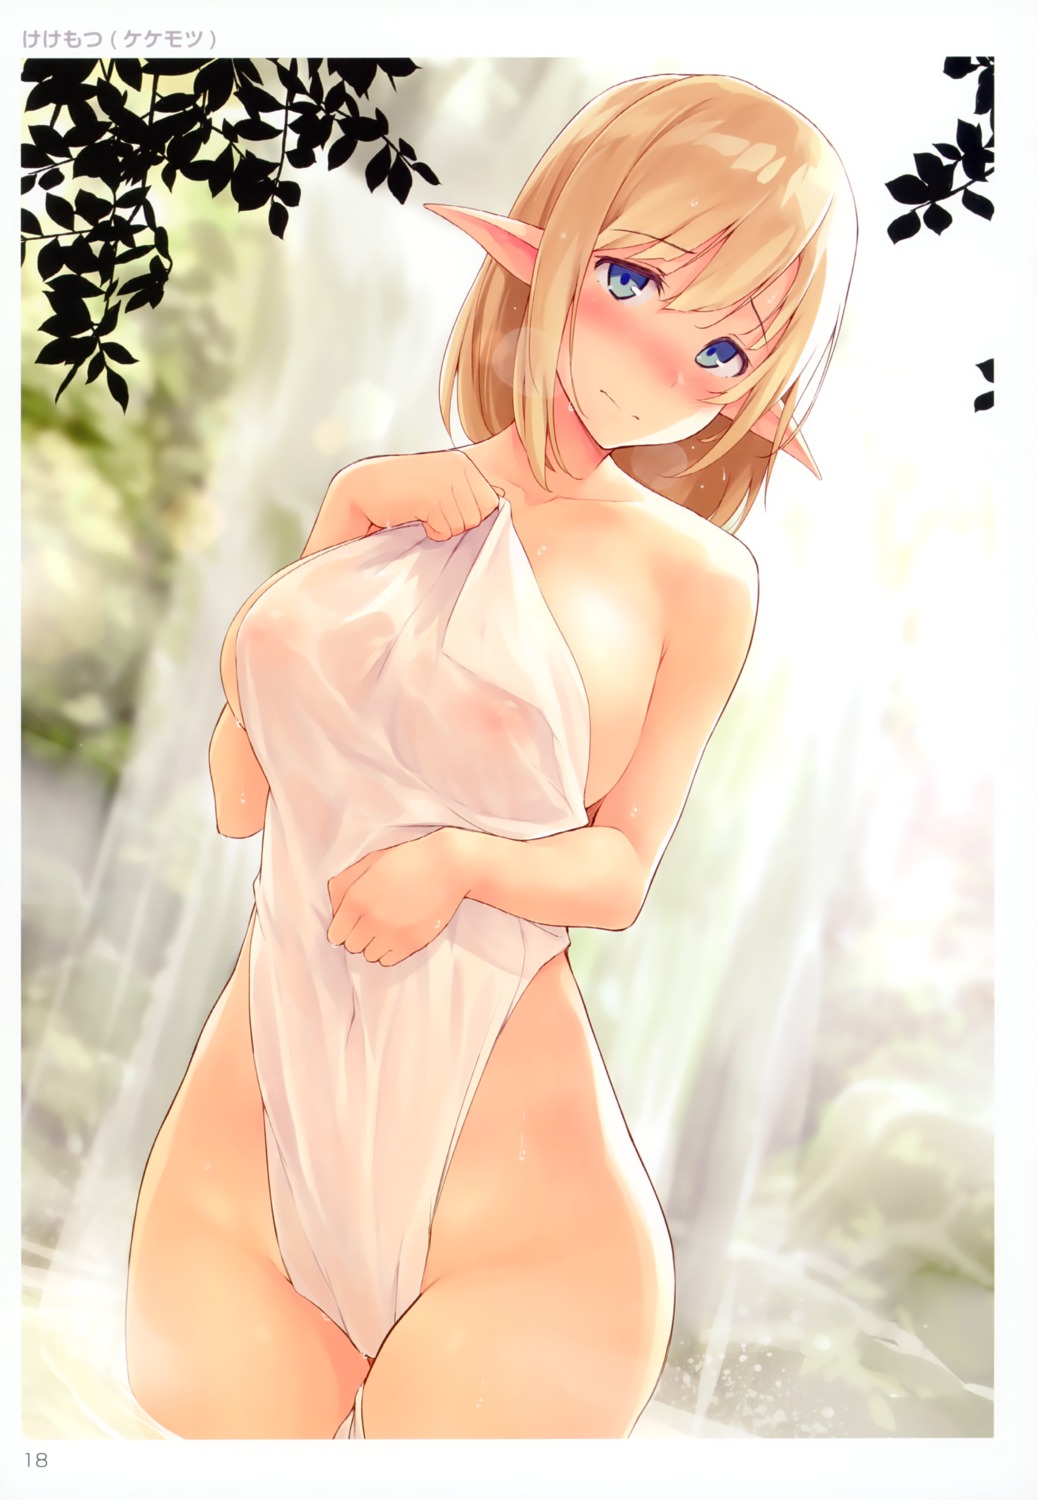 elf kekemotsu naked nipples onsen pointy_ears see_through towel wet